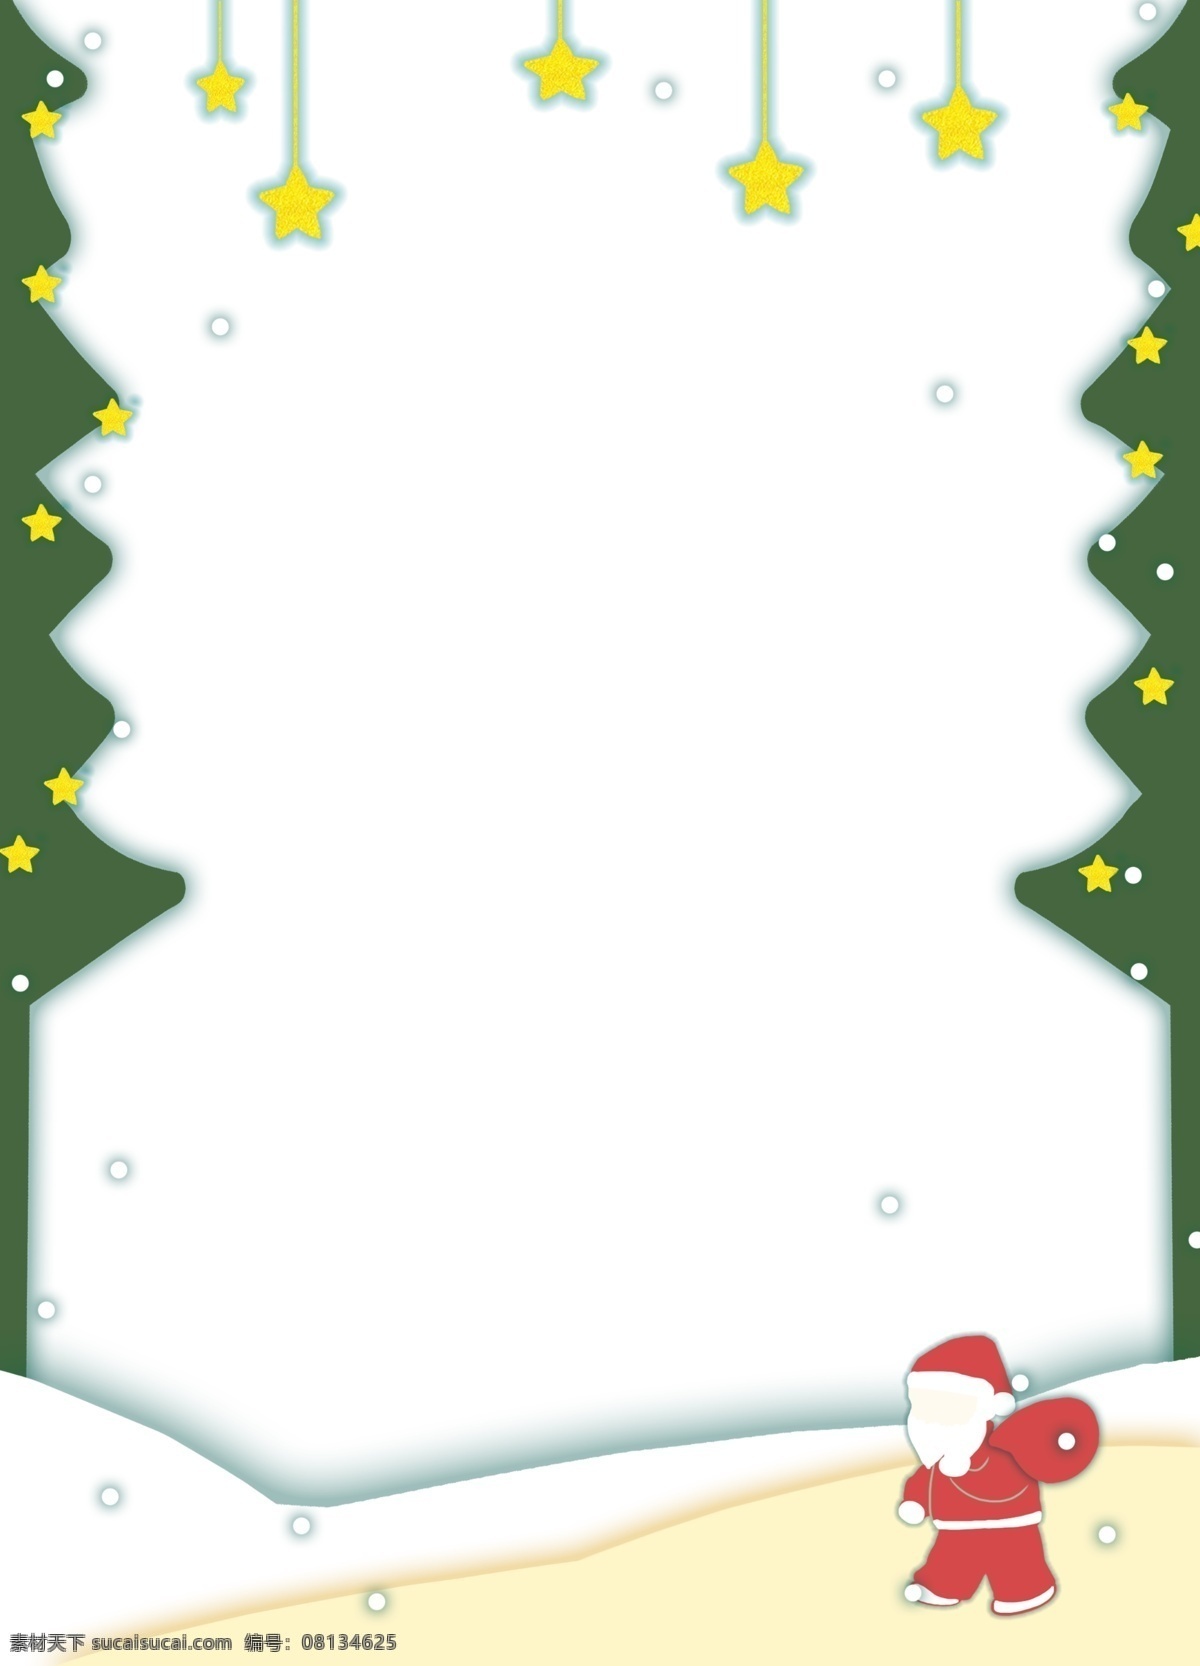 圣诞节 圣诞老人 边框 手绘 黄色 五角星 装饰 白色的雪花 绿色的圣诞树 漂亮的边框 唯美边框